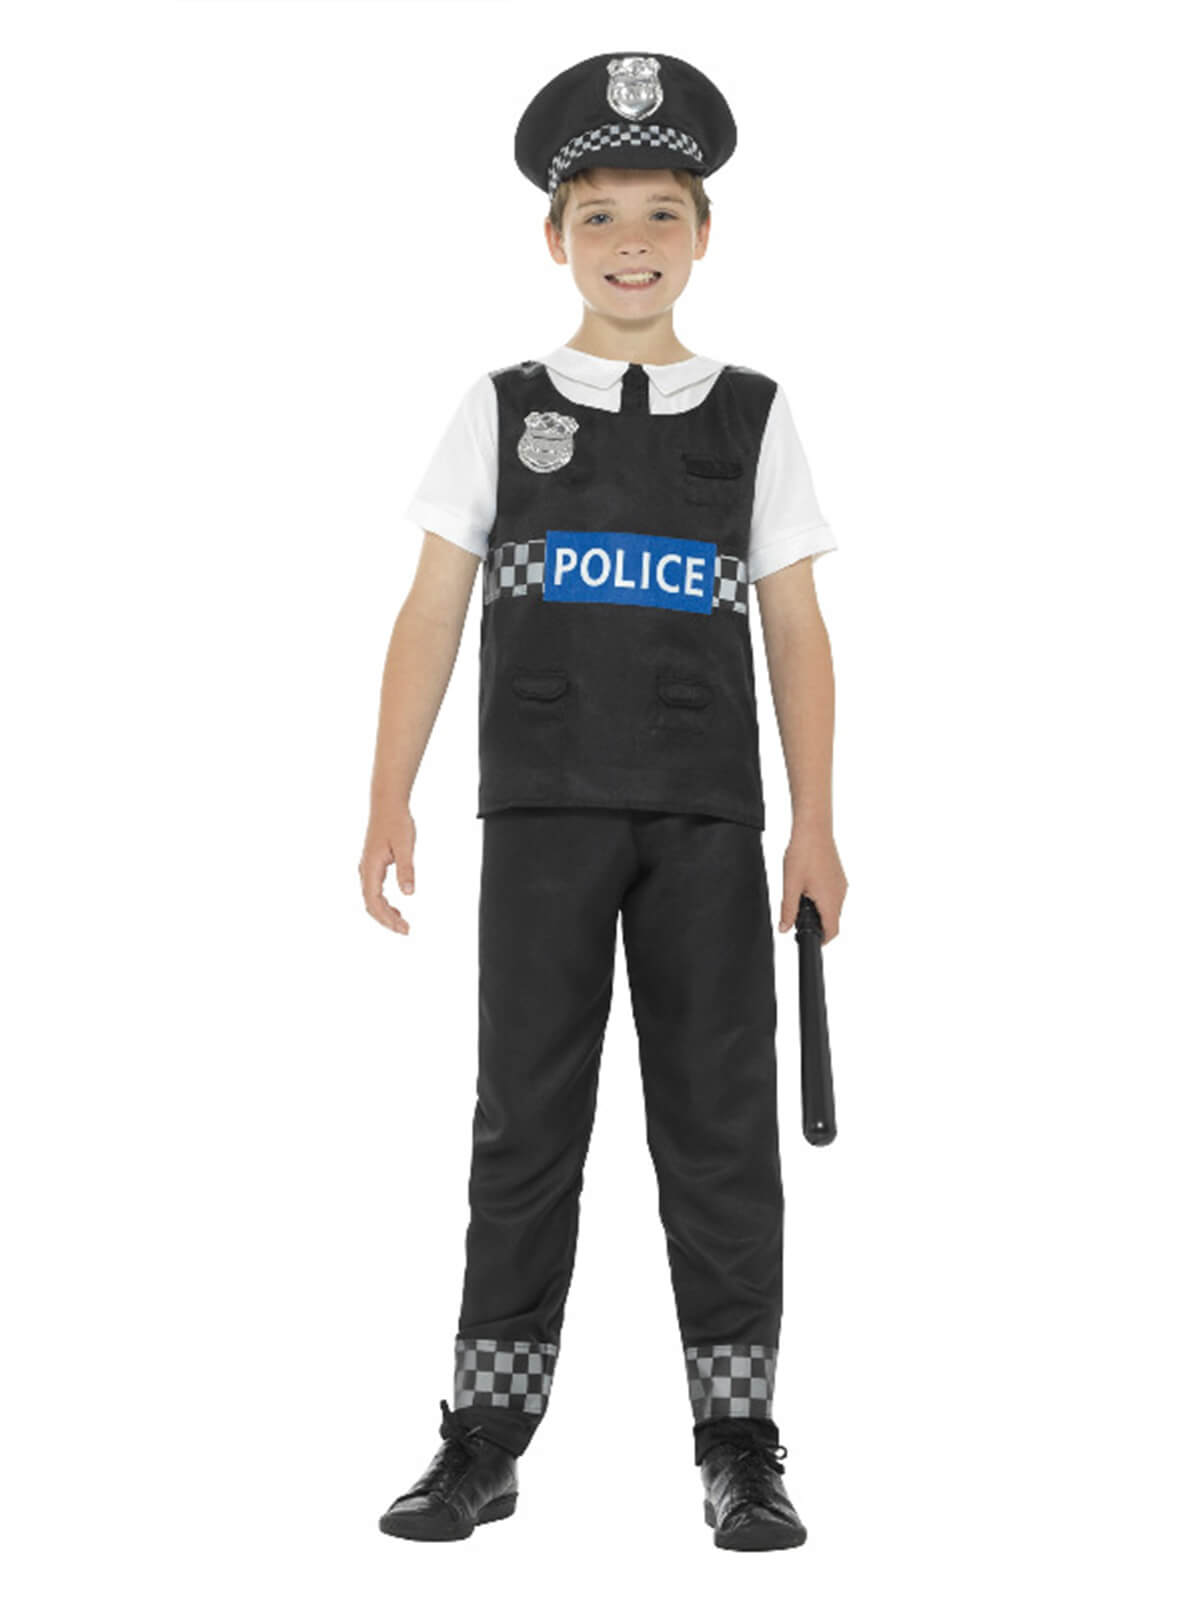 Cop Halloween Costume